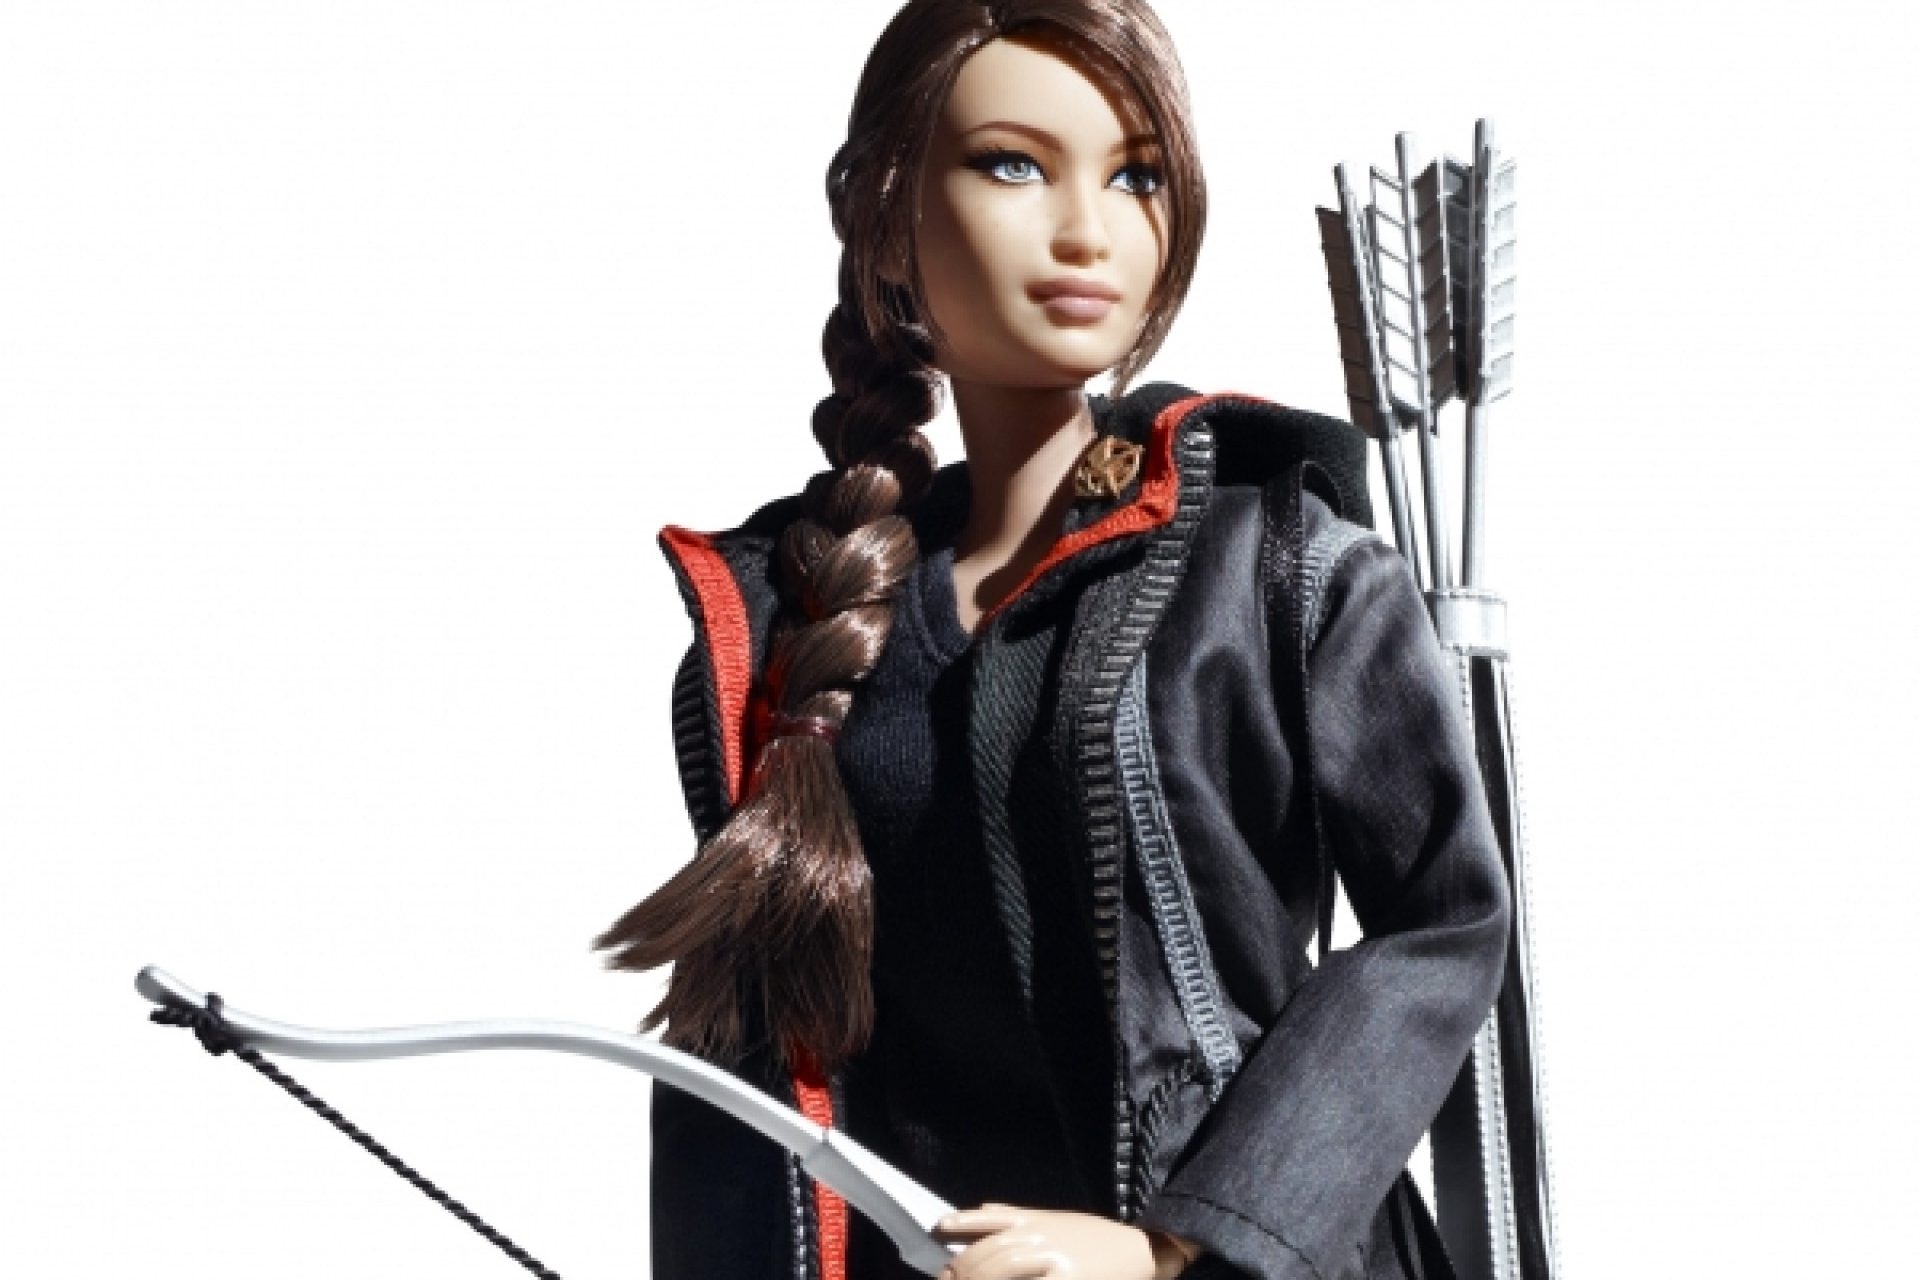 Jennifer Lawrence: Barbie in Katniss style